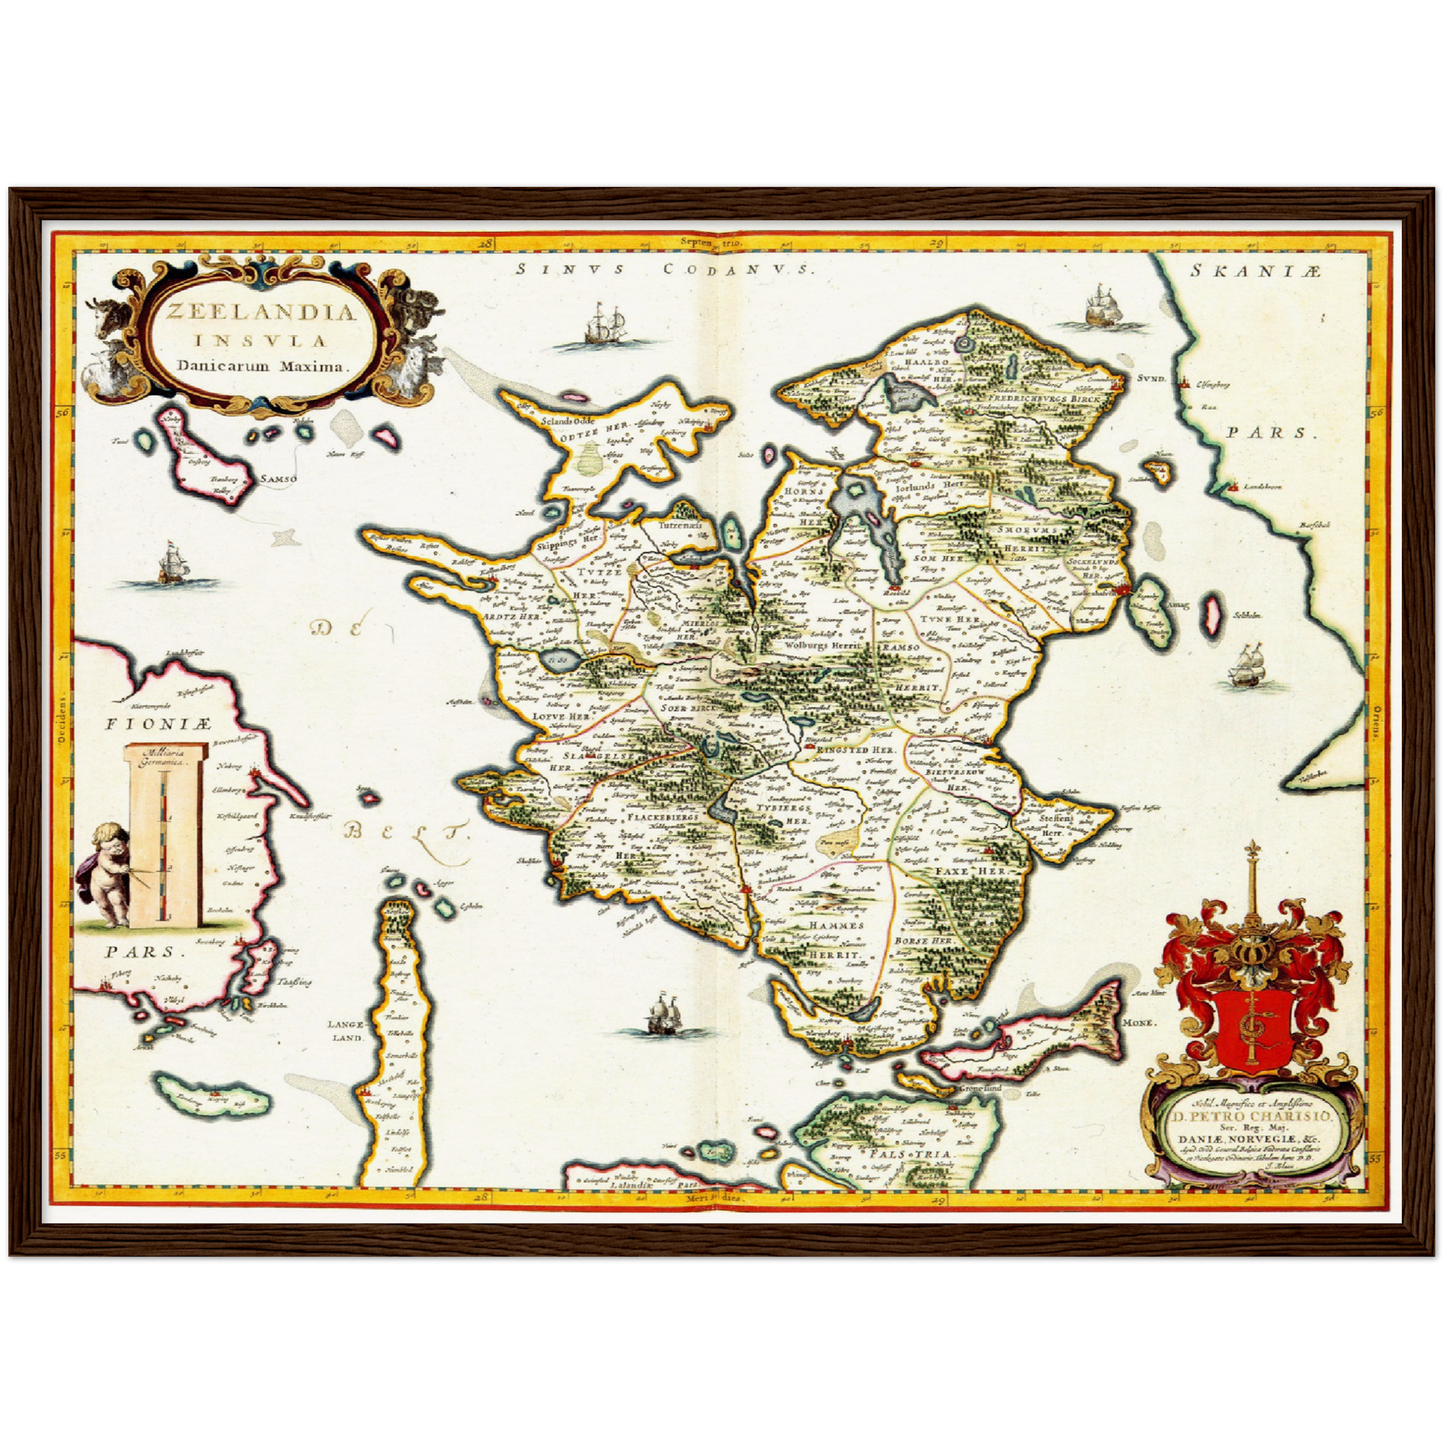 Historische Landkarte Seeland um 1690